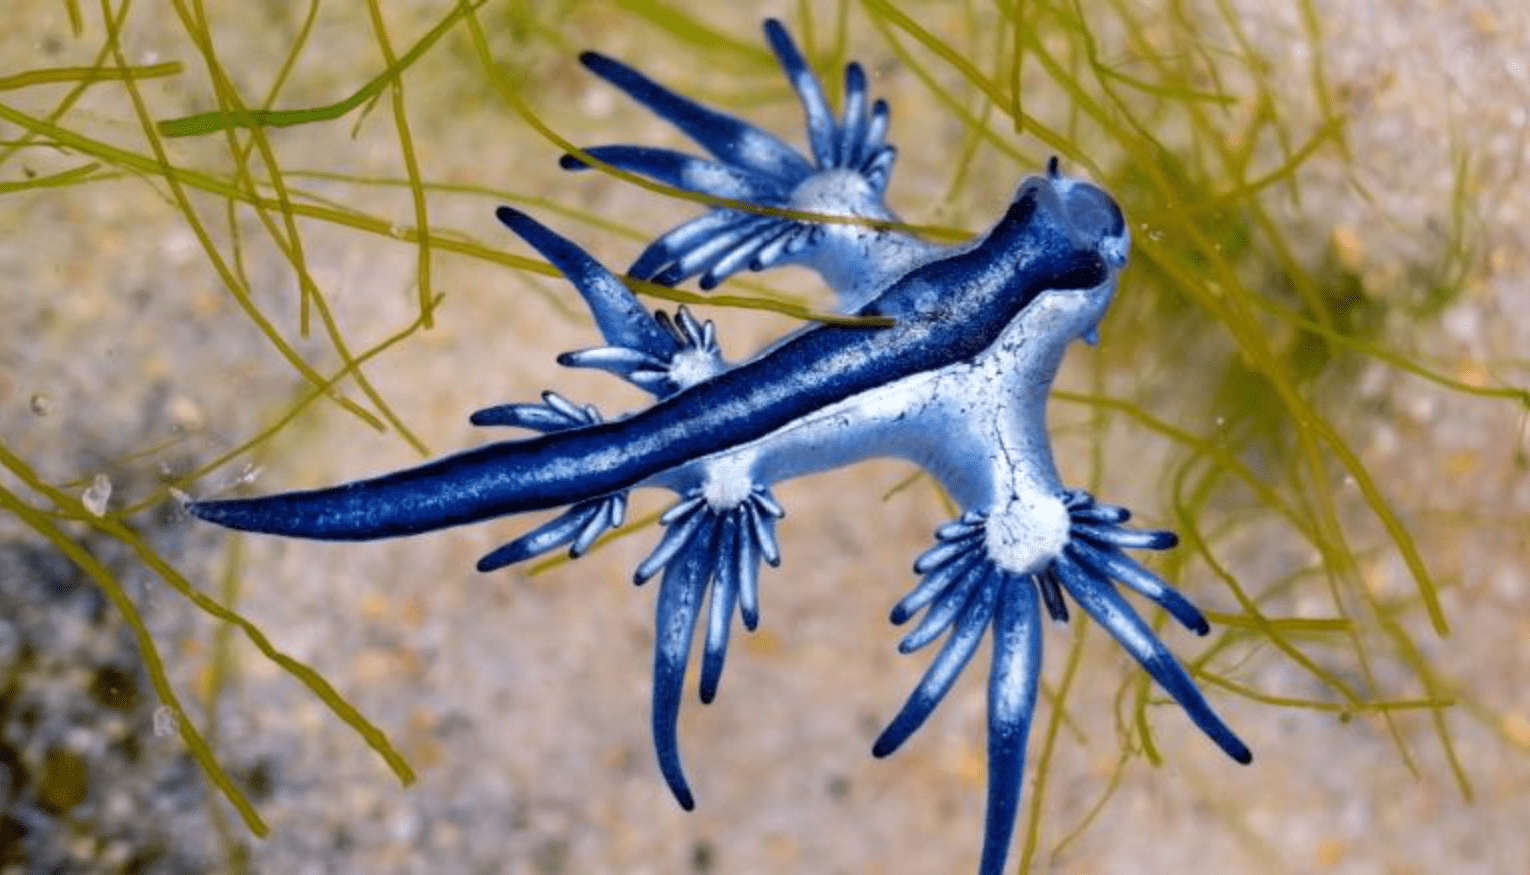  حلزون دریایی بی صدف یا لیسه دریایی «بلو دراگون» جانوری زیبا با قابلیت استتار و نیش زهرآلود